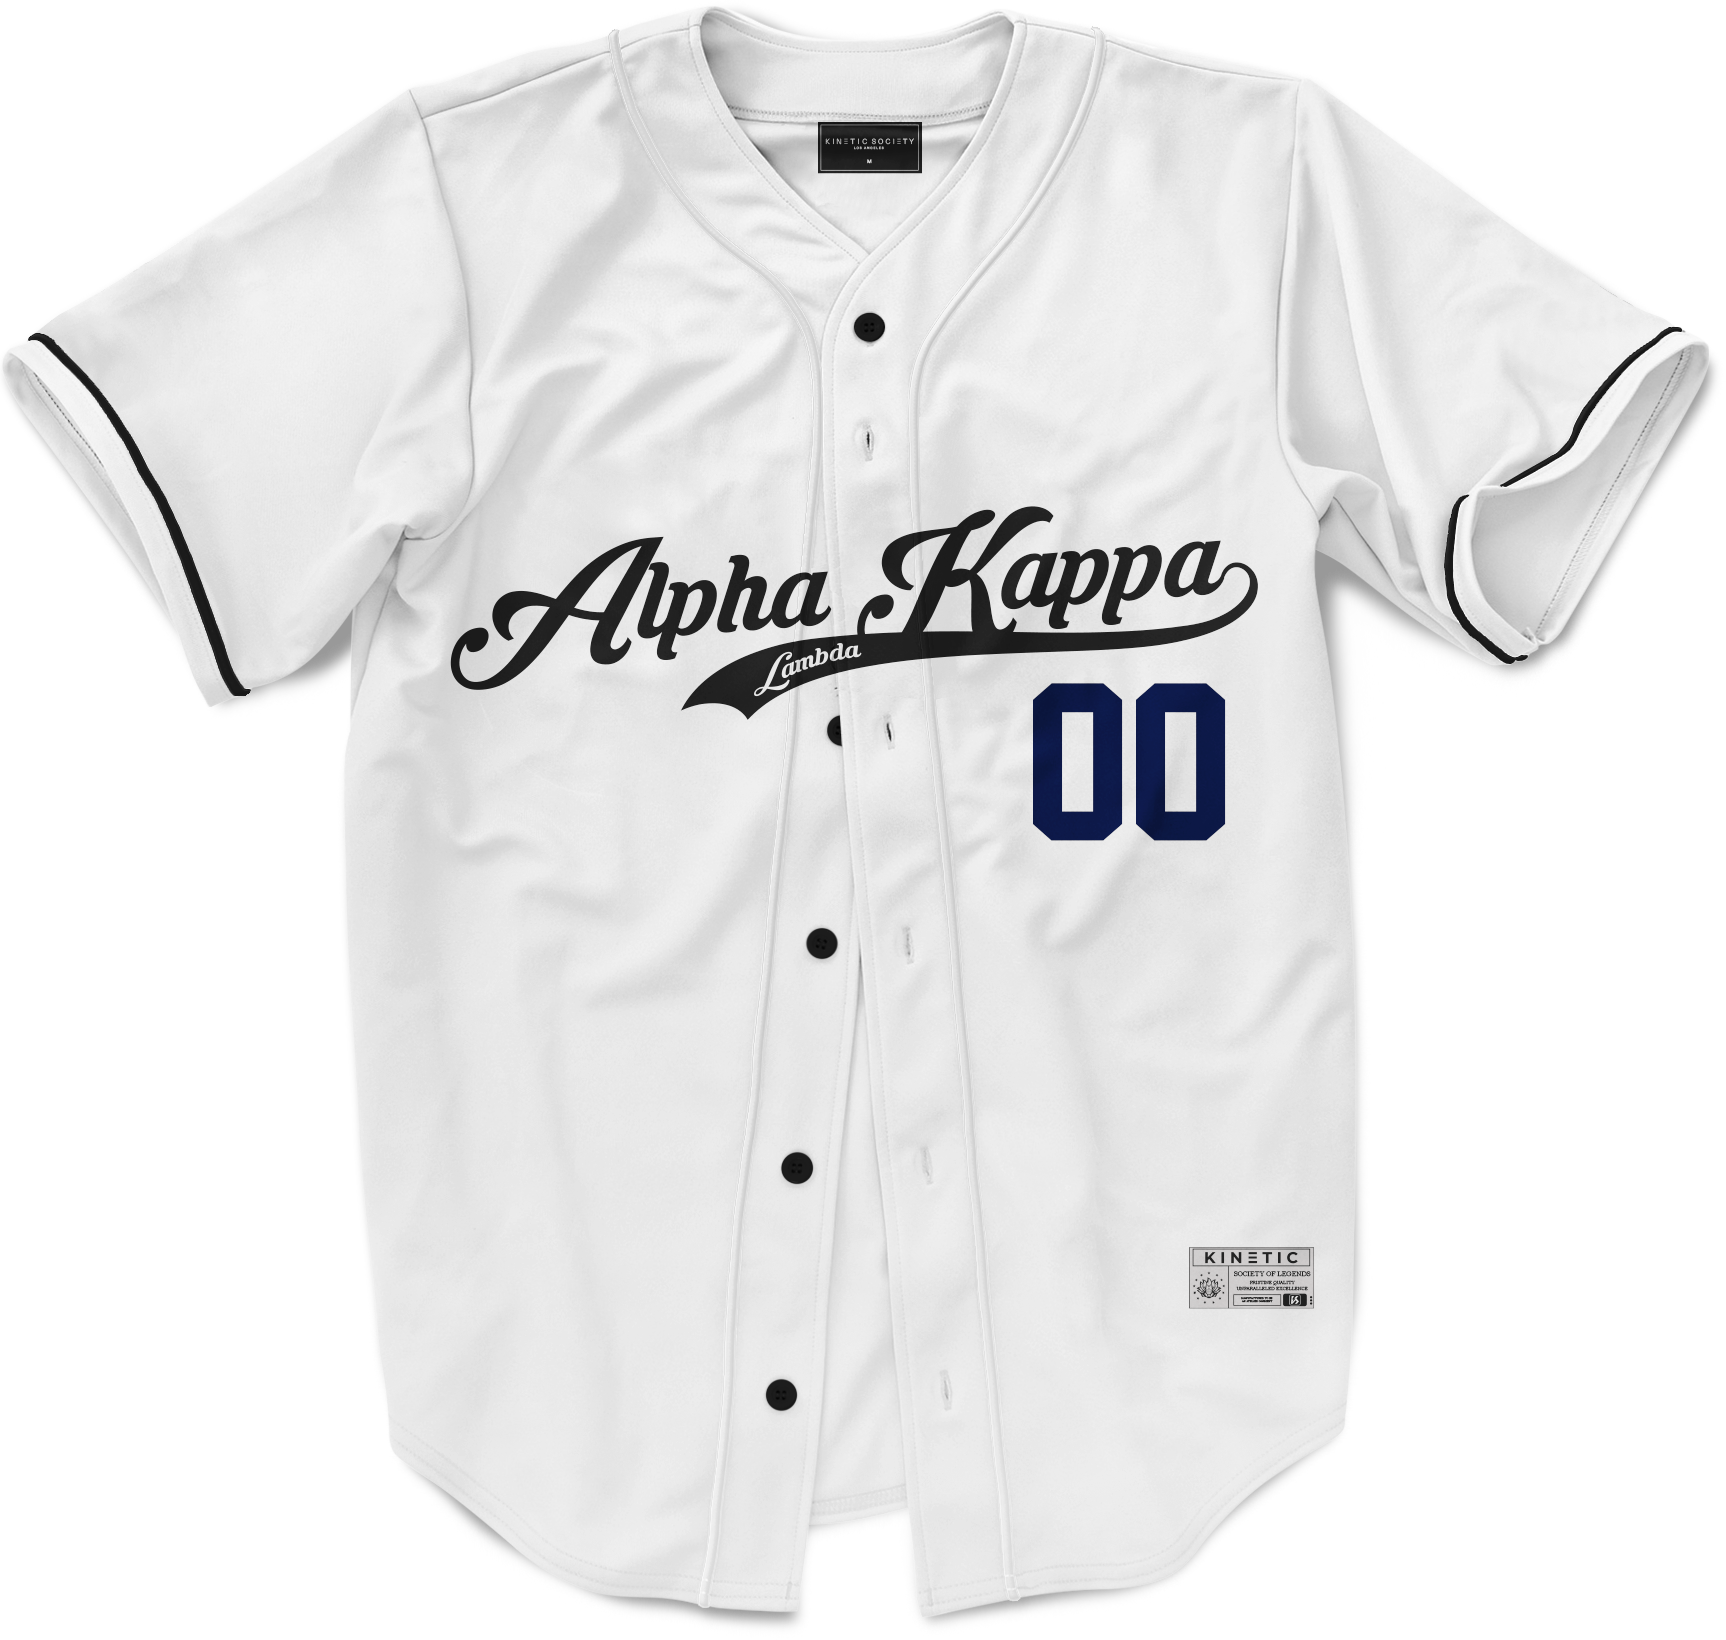 Alpha Kappa Lambda - Classic Ballpark Blue Baseball Jersey